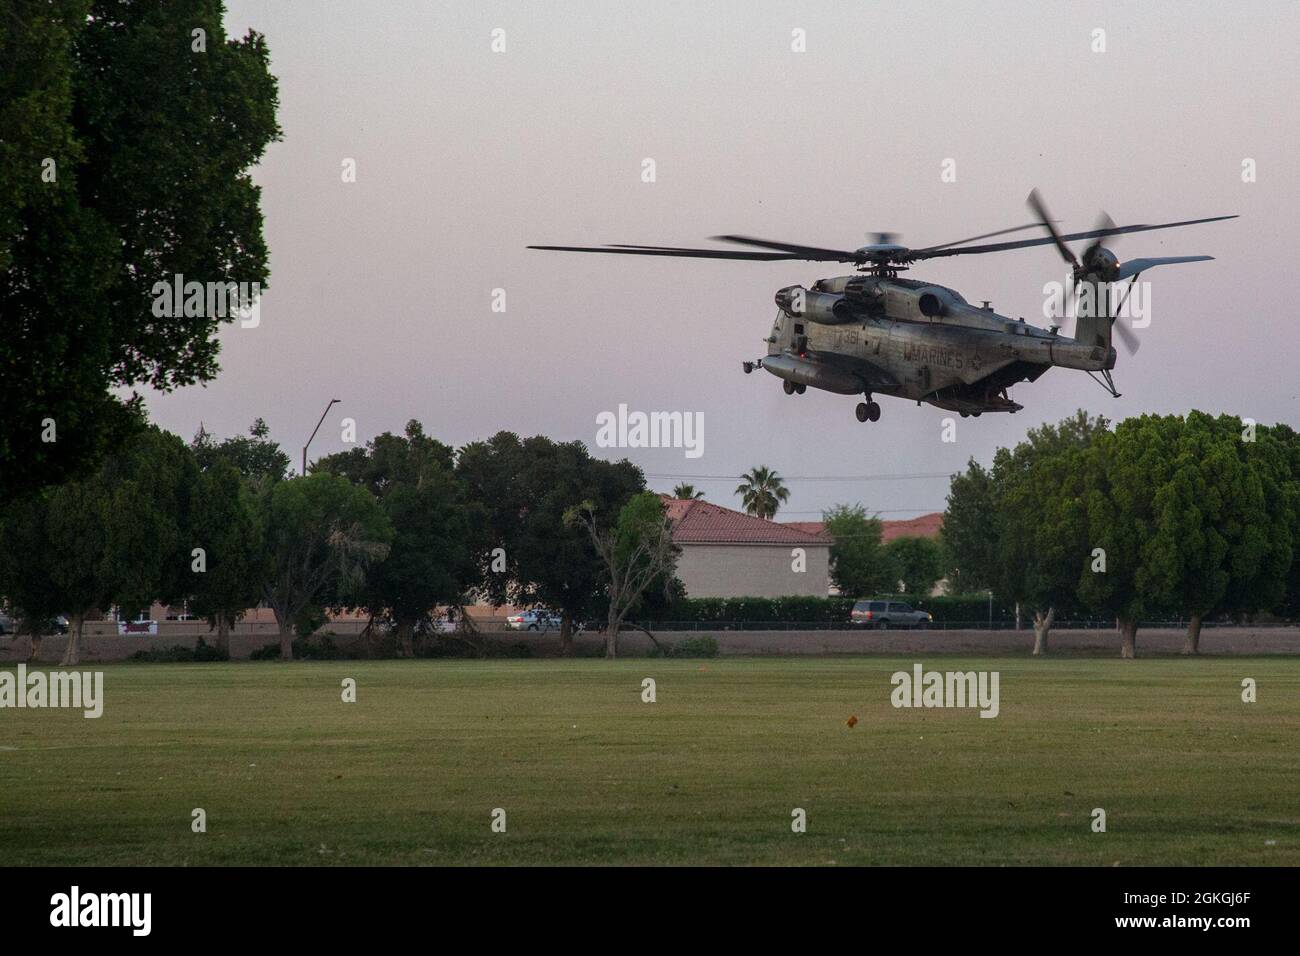 Un Super Stallion del Cuerpo de Marines de los Estados Unidos CH-53E, asignado al Escuadrón Uno de Armas y Tácticas de Aviación Marina (MAWTS-1), despida durante las Tácticas de Apoyo a la Agresión 3 (AST-3), Ejercicio de Asistencia Humanitaria al Extranjero, en apoyo al Curso de Instructor de Armas y Tácticas (WTI) 2-21, en el Parque Kiwanis, en Yuma, Arizona, 16 de abril de. 2021. WTI es un evento de capacitación de siete semanas organizado por MAWTS-1, que proporciona capacitación táctica avanzada estandarizada y certificación de las calificaciones de instructores de unidad para apoyar la preparación y capacitación de la aviación marina, y ayuda en el desarrollo y empleo de armas y tácticas de aviación. Foto de stock